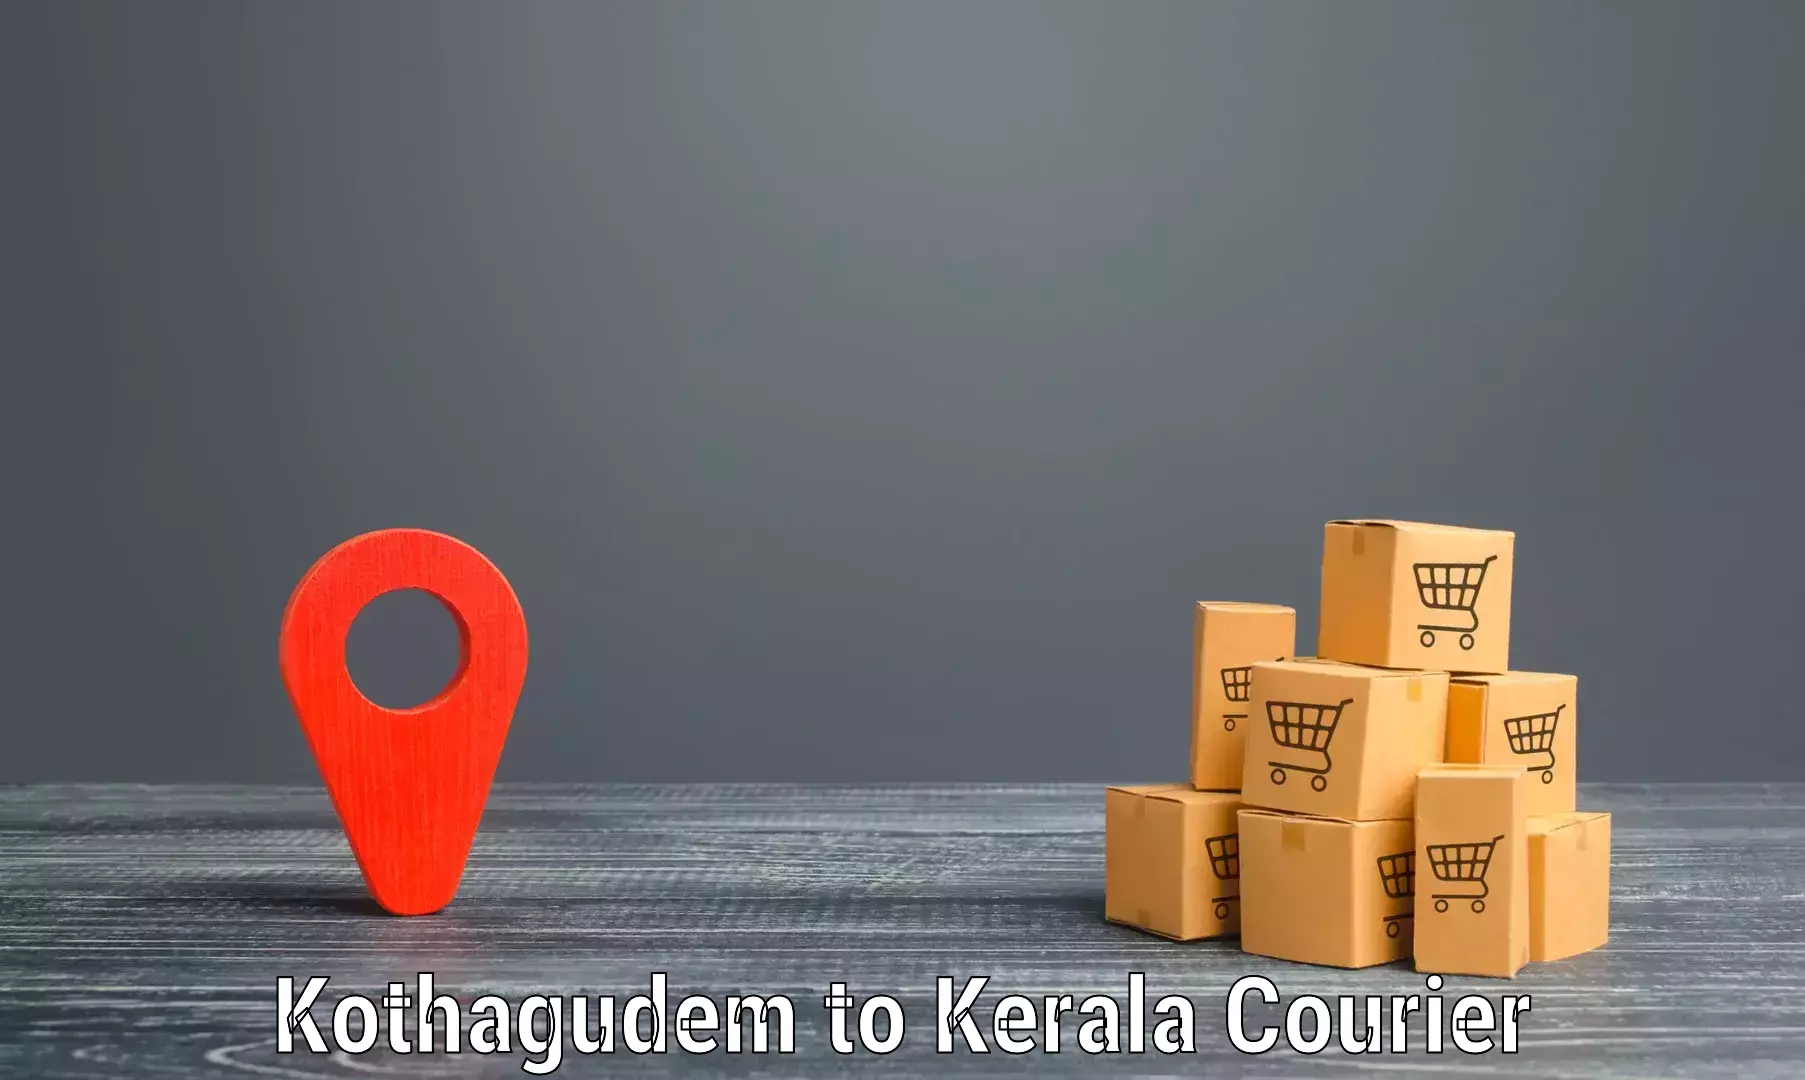 Doorstep delivery service Kothagudem to Calicut